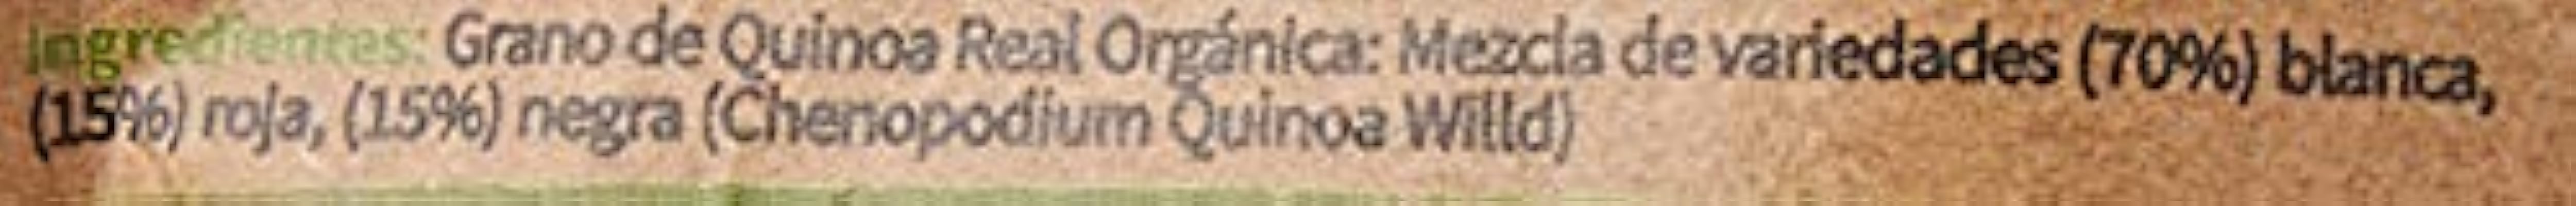 Quinoa En grano Mix 300 gr Doy Pack IjG40EUq